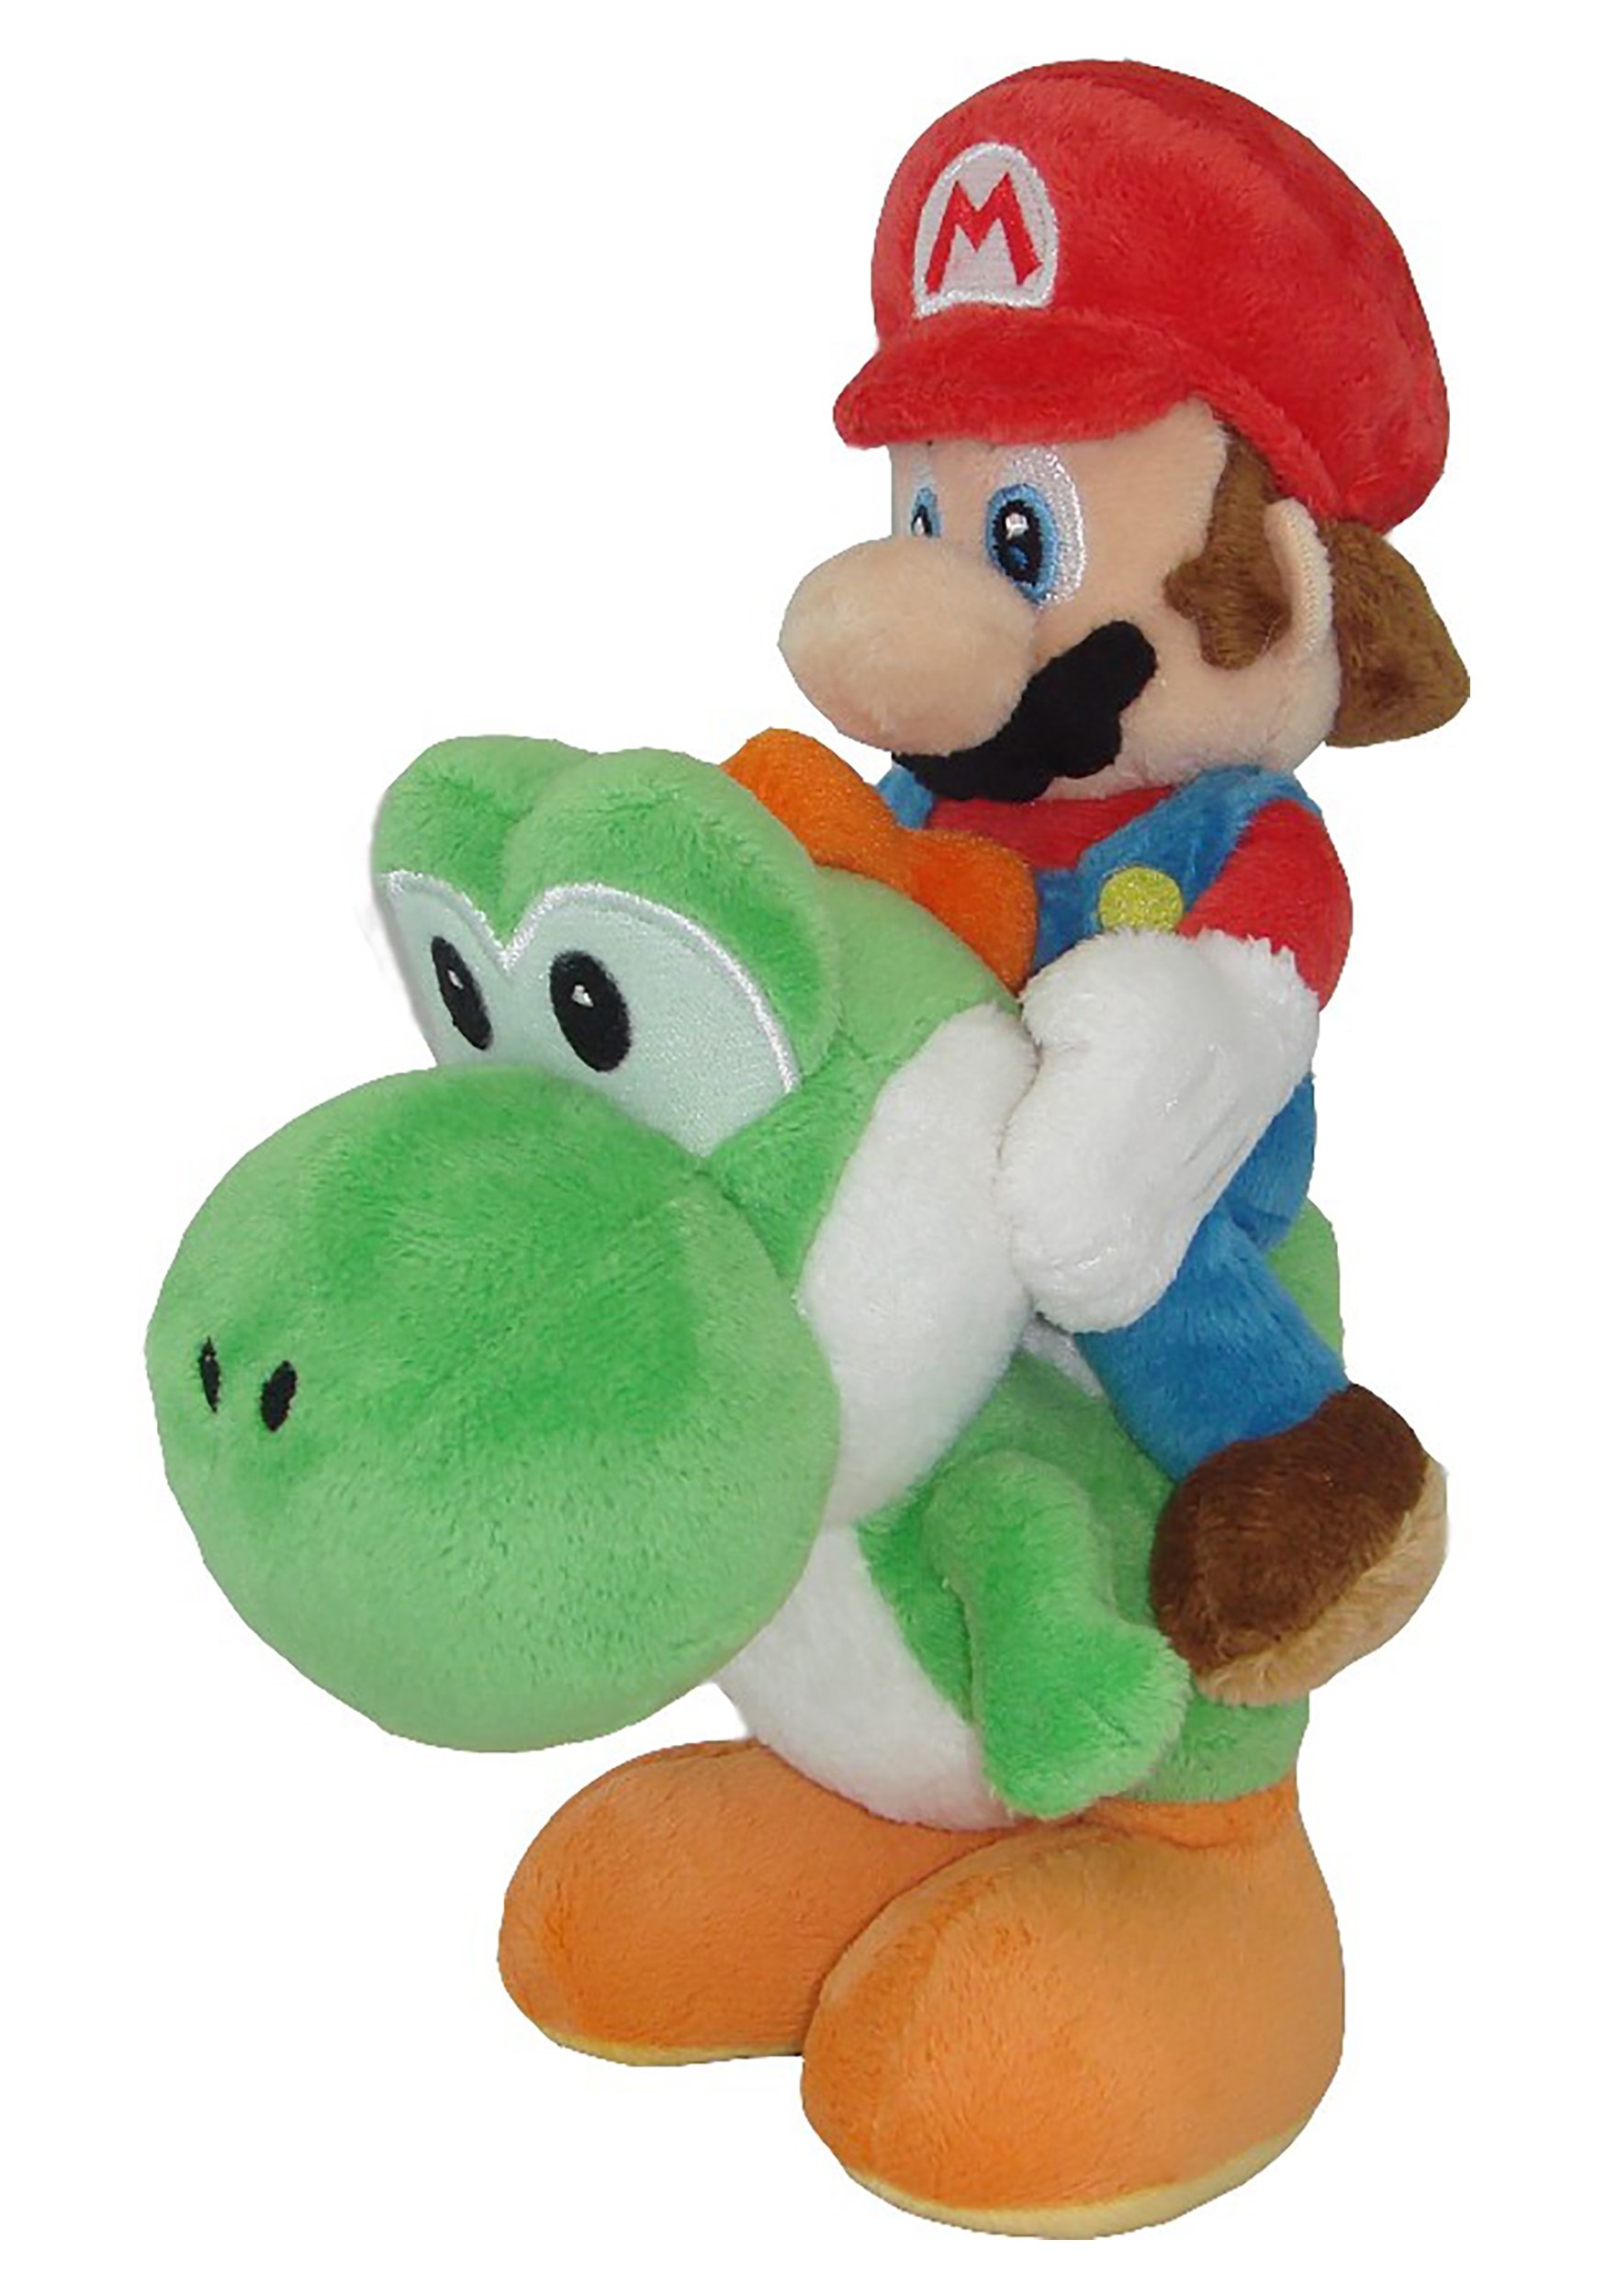 8" Plush - Mario Riding Yoshi